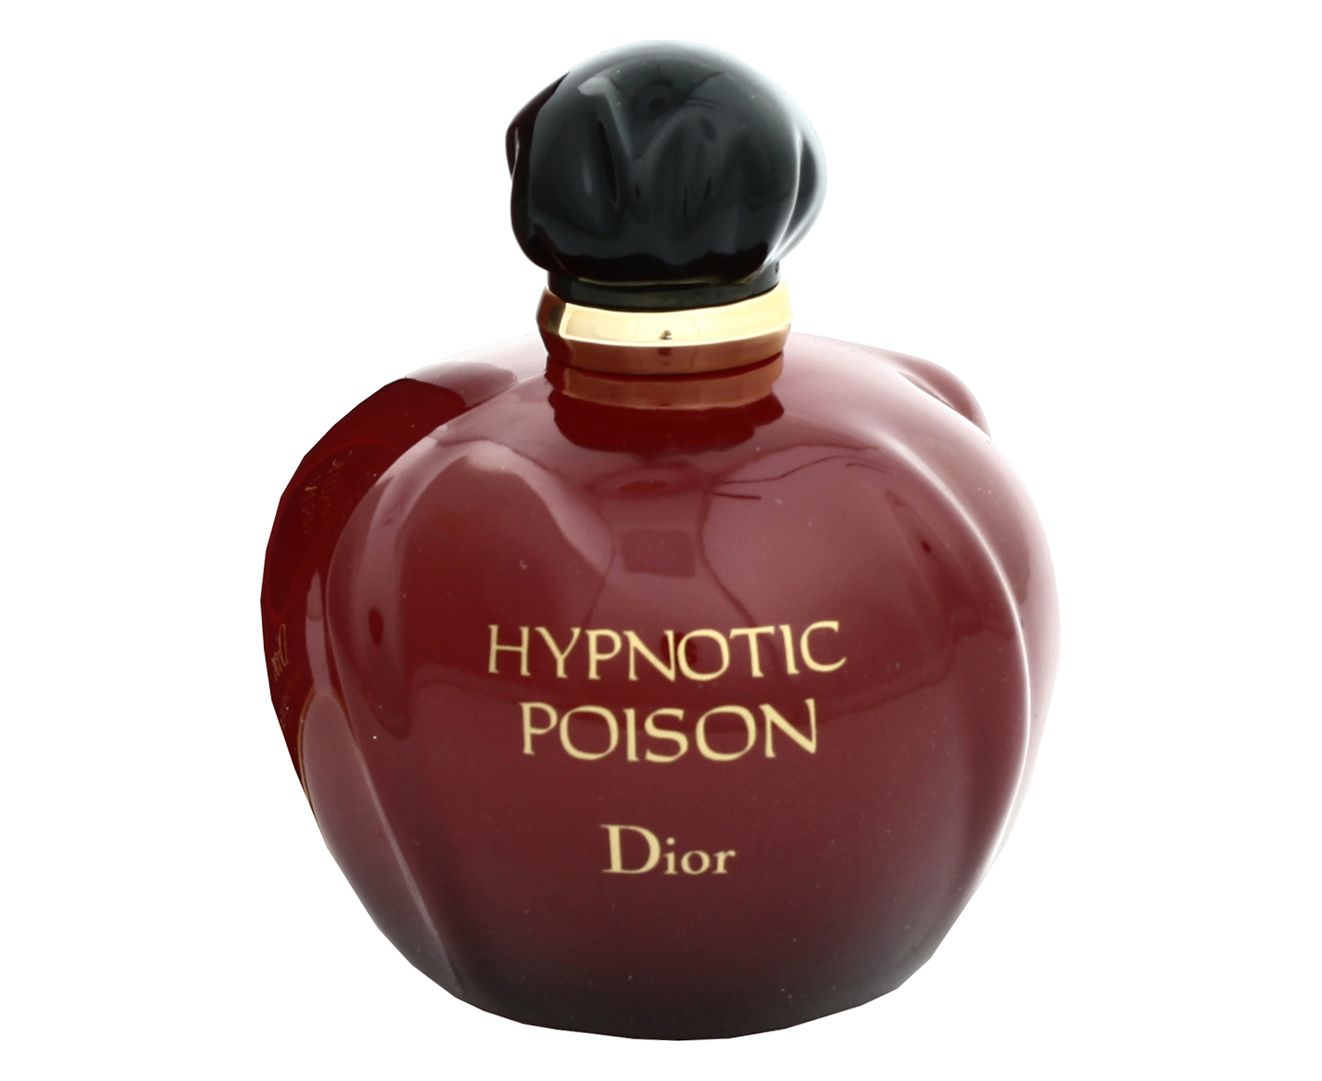 Туалетная вода пуазон. Christian Dior Hypnotic Poison. Dior Hypnotic Poison 100. Christian Dior "Poison" 100 ml. Dior туалетная вода Hypnotic Poison.